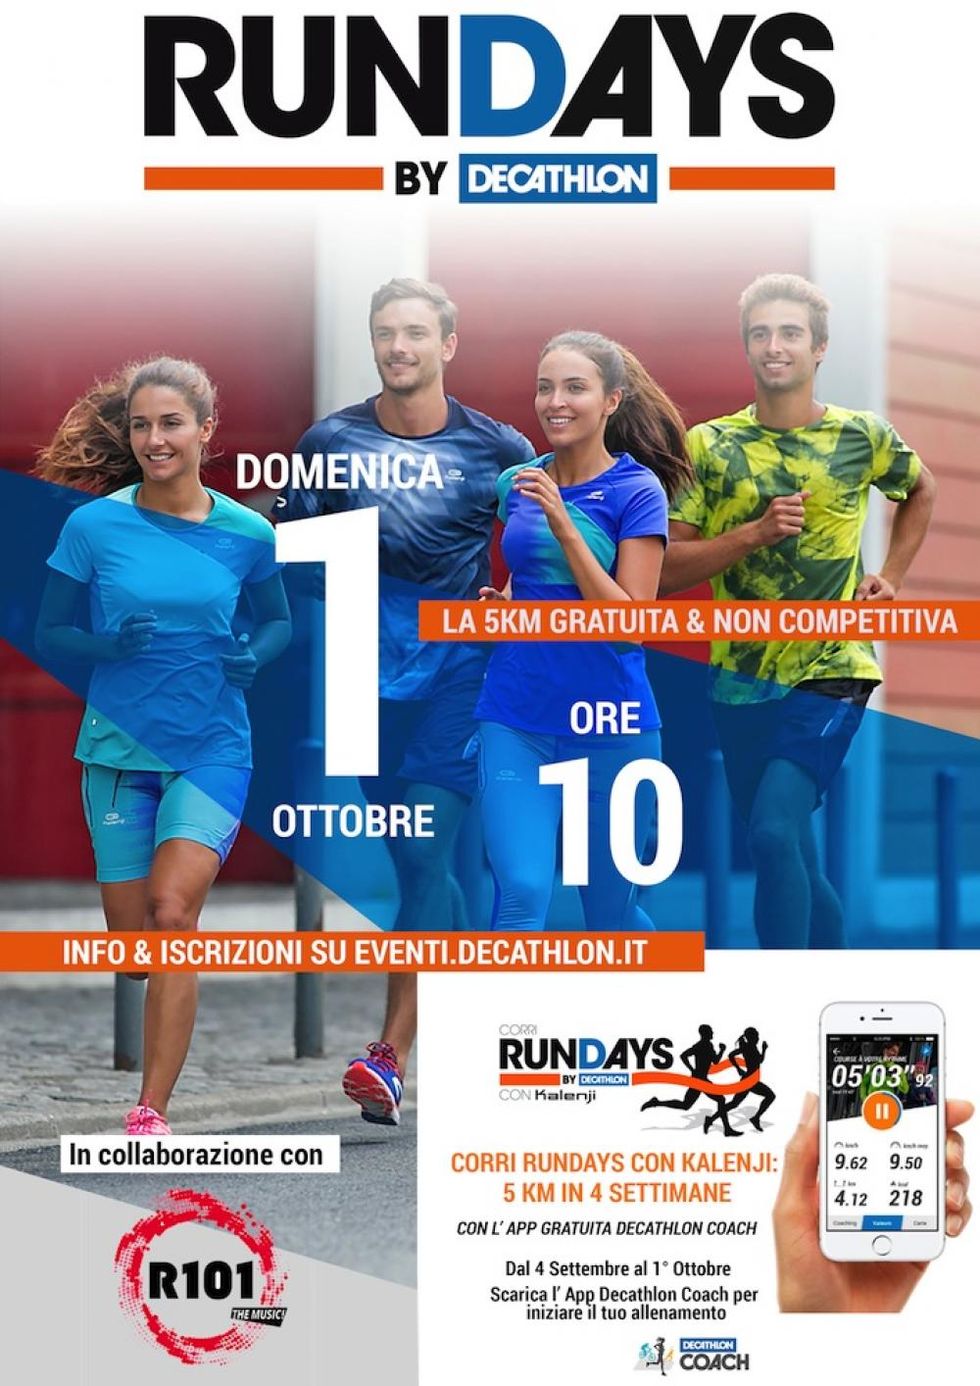 Rundays Decathlon nei negozi specializzati di tutta Italia